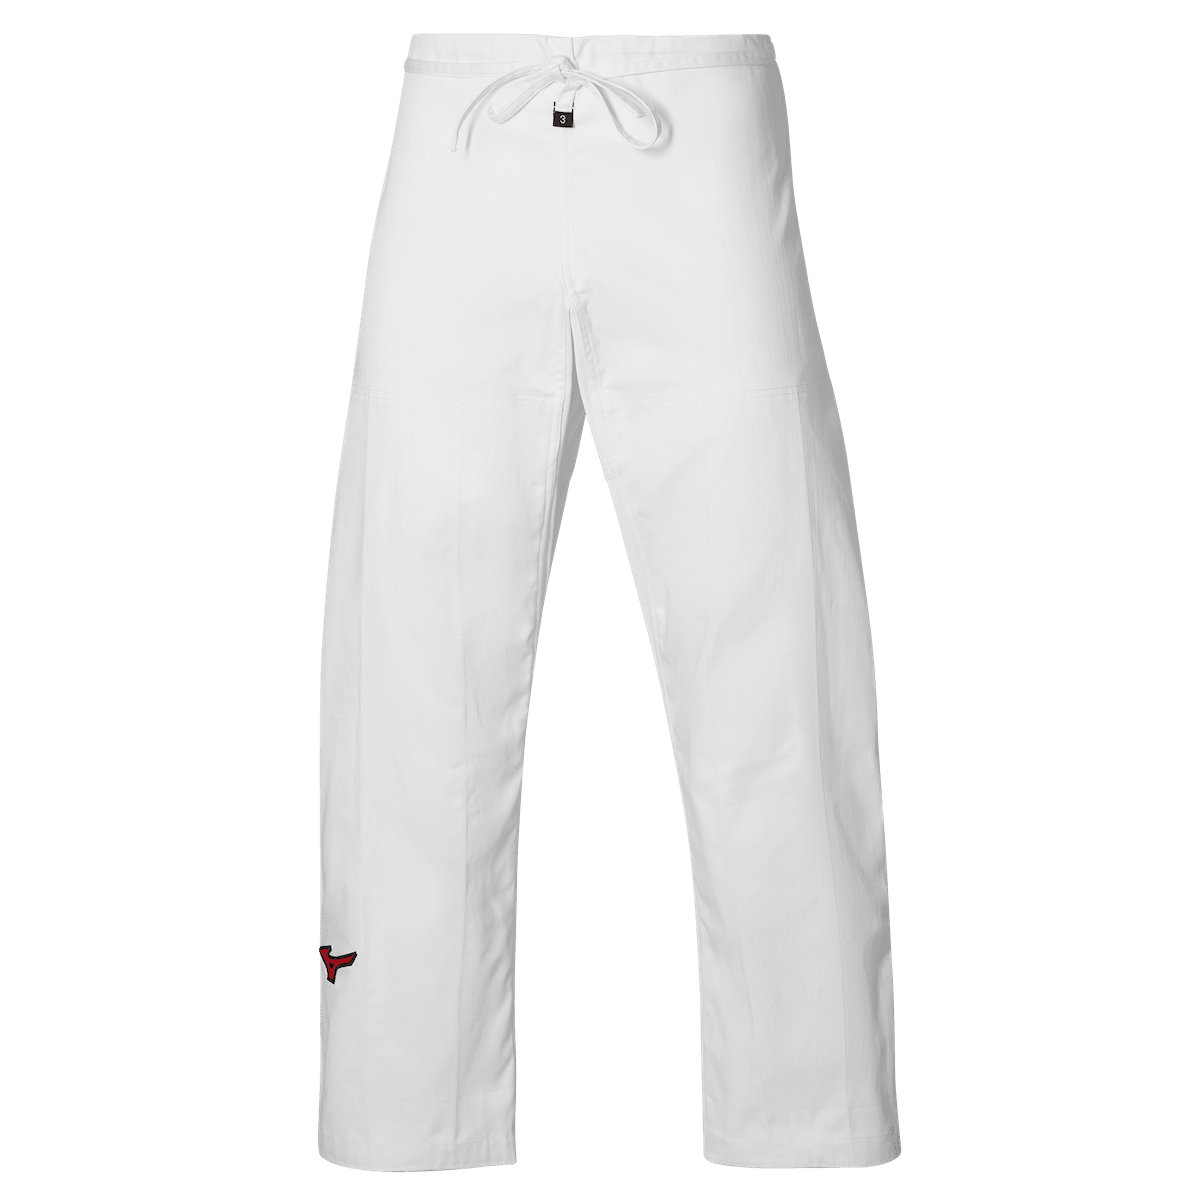 Pantalon de Judo compétition Mizuno Yoroi - Blanc